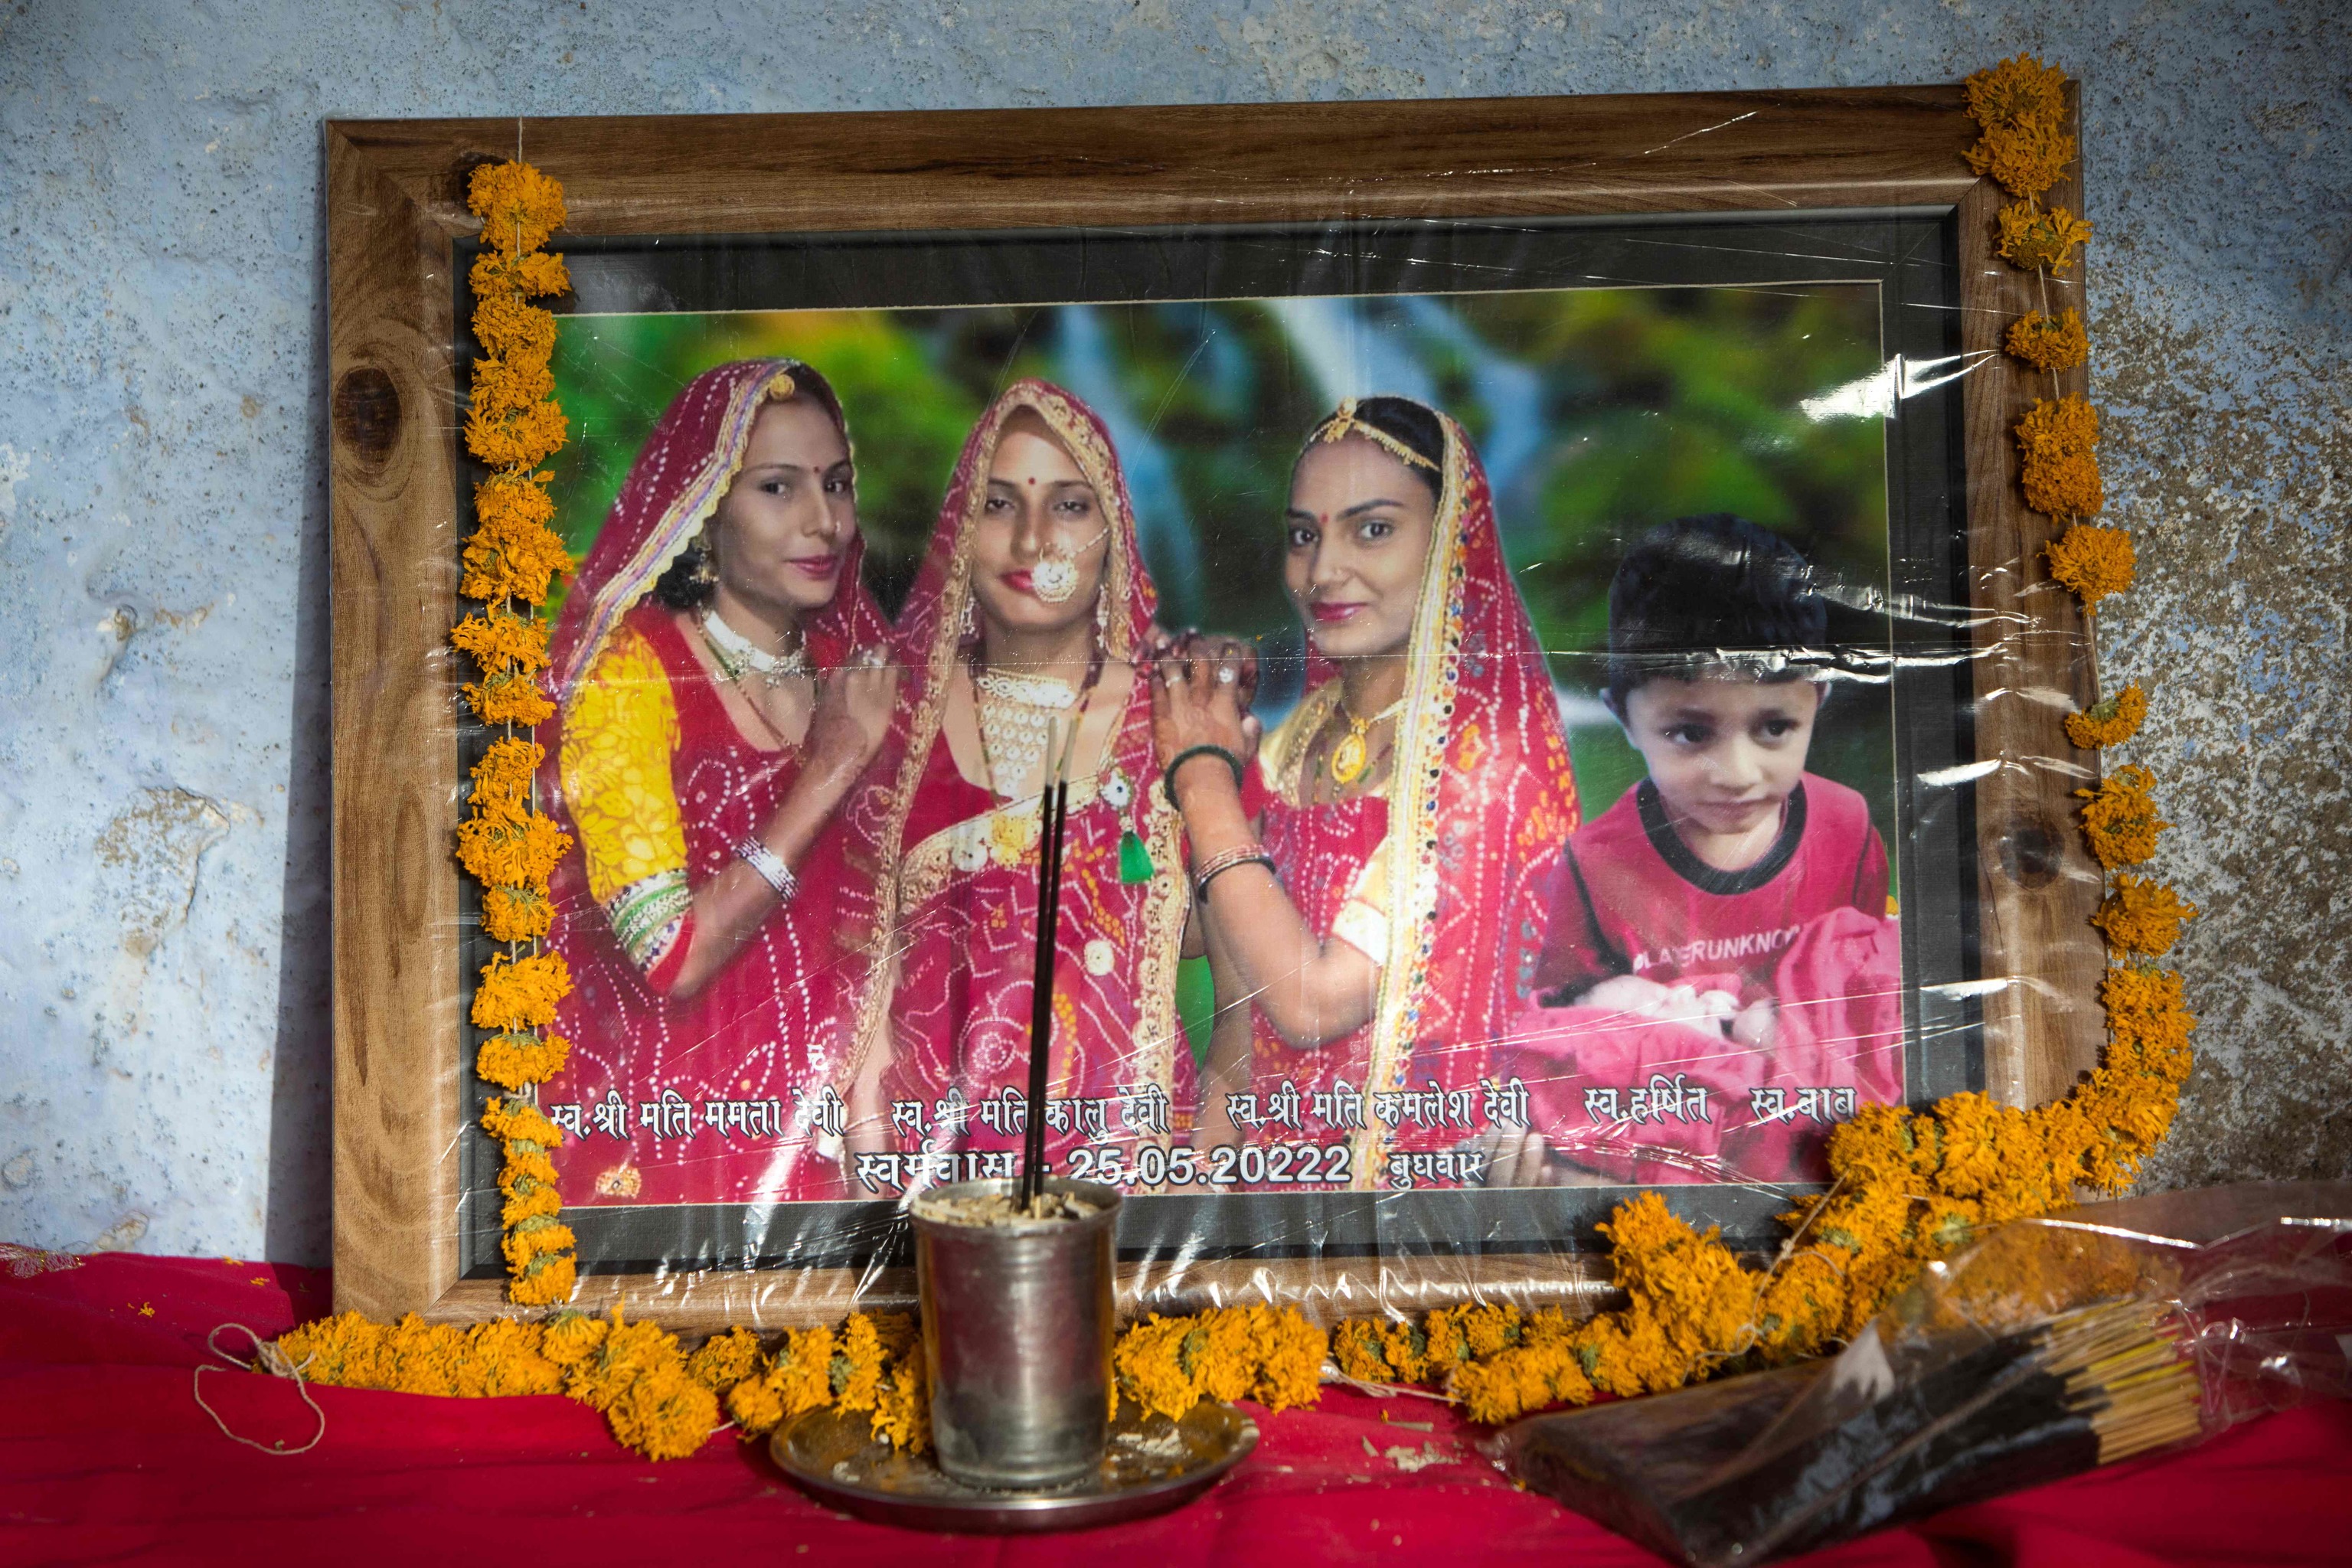 El retrato de tres mujeres casadas (de izquierda a derecha) Mamta, Kalu, Kamlesh y el hijo de Kalu, Harshit, que fueron encontrados muertos junto con otro niño en un pozo de la aldea de Dudu el 28 de mayo, es fotografiado en la casa de la familia en la aldea de Chhapya del estado indio de Rajastán el 31 de mayo de 2022. - Antes de que las tres hermanas y sus hijos fueran encontrados muertos en un pozo, dejaron un mensaje en el que culpaban a la familia con la que se habían casado. Kalu, Kamlesh y Mamta Meena fueron víctimas de una disputa por las dotes, las sumas a menudo elevadas que los padres indios pagan para casar a sus hijas.